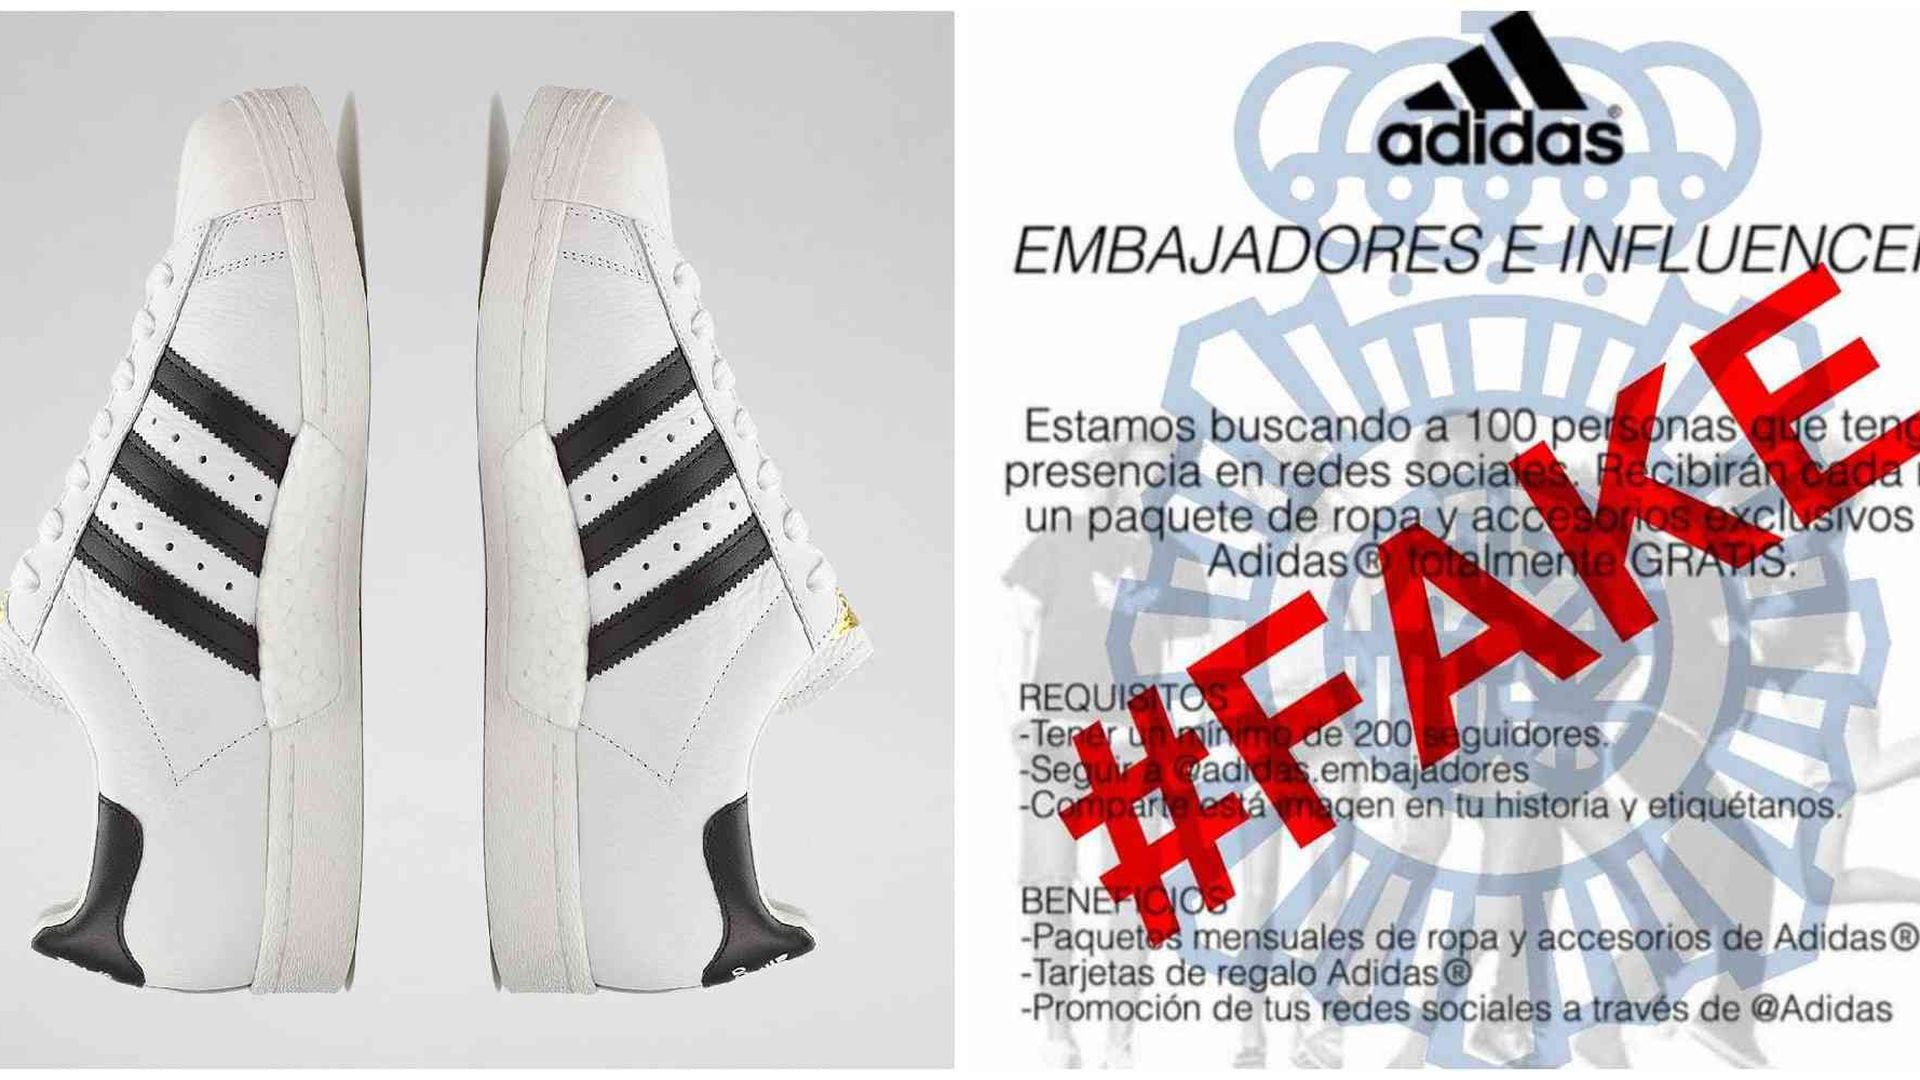 Sea embajador de Adidas La estafa en la están cayendo usuarios de Instagram